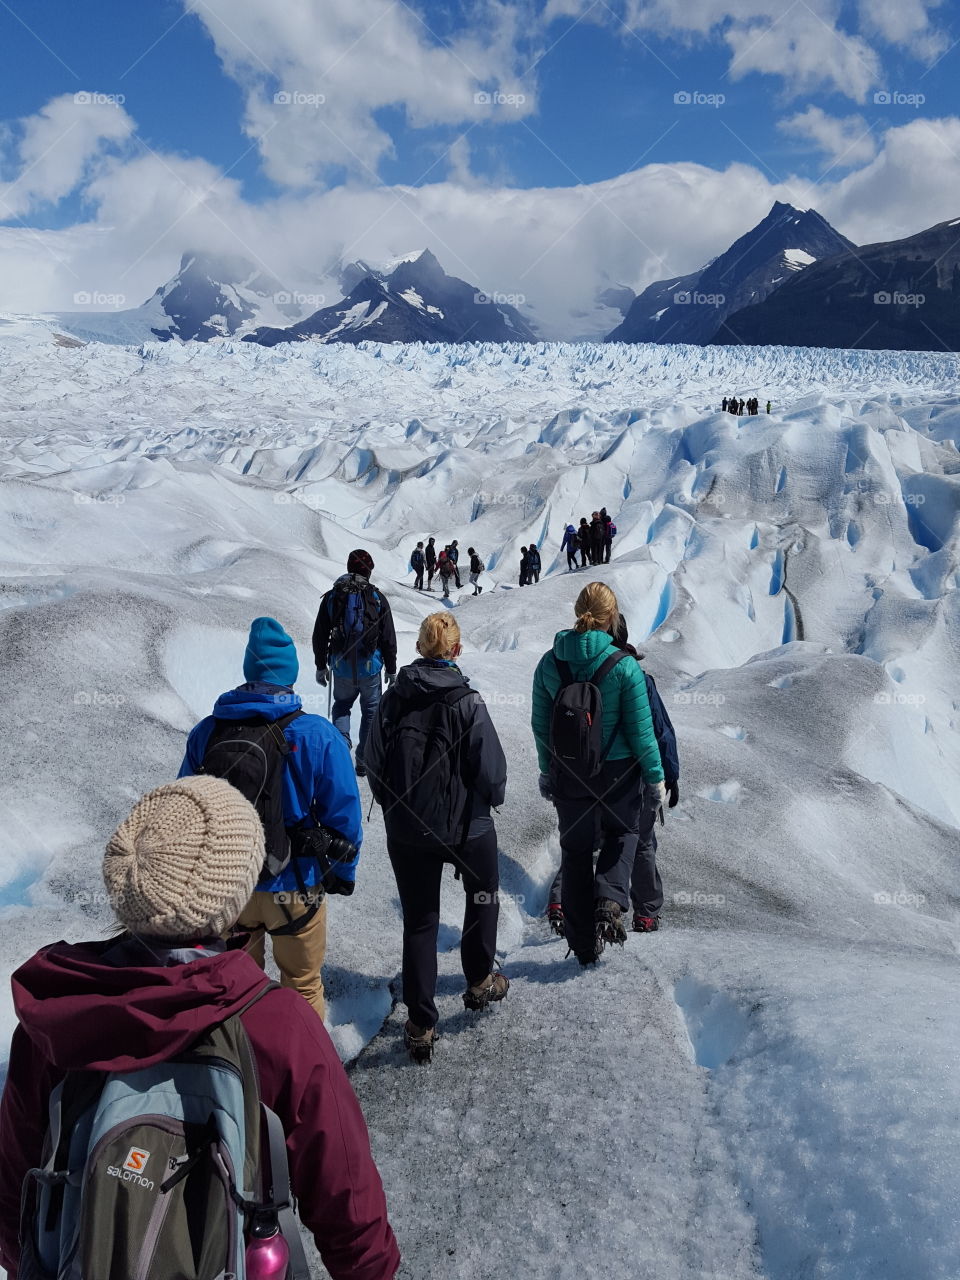 Glacier hiking on Perito Moreno in Argentina.